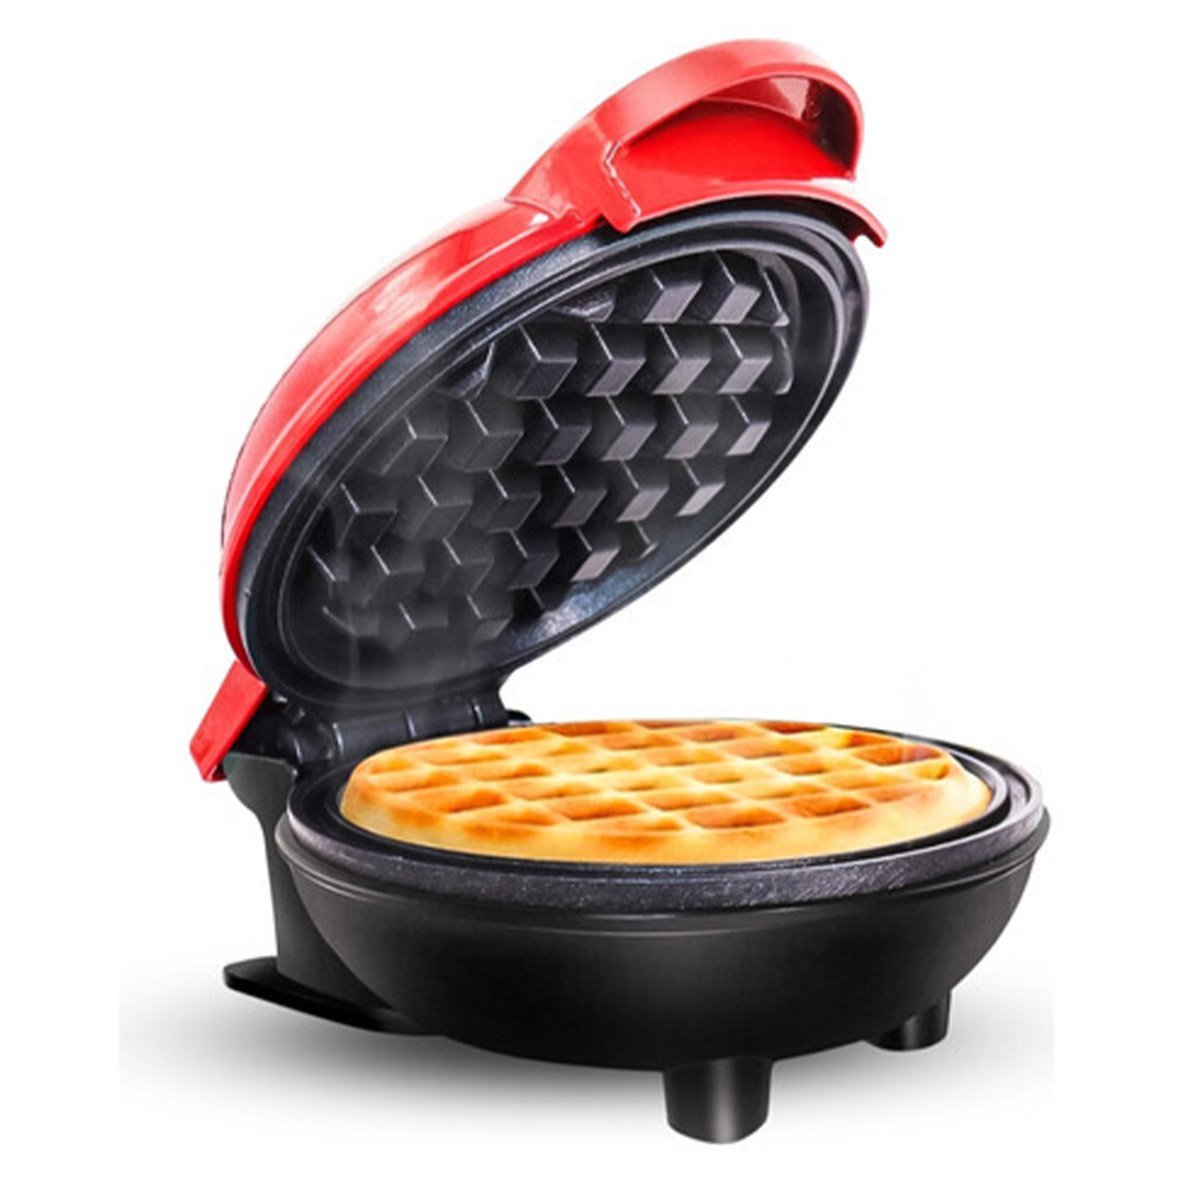 Mini Maquina de Waffles Panqueca Refeiçao Cafe da Manha Lanche Cozinha Placa Antiaderente Portatil L - 3